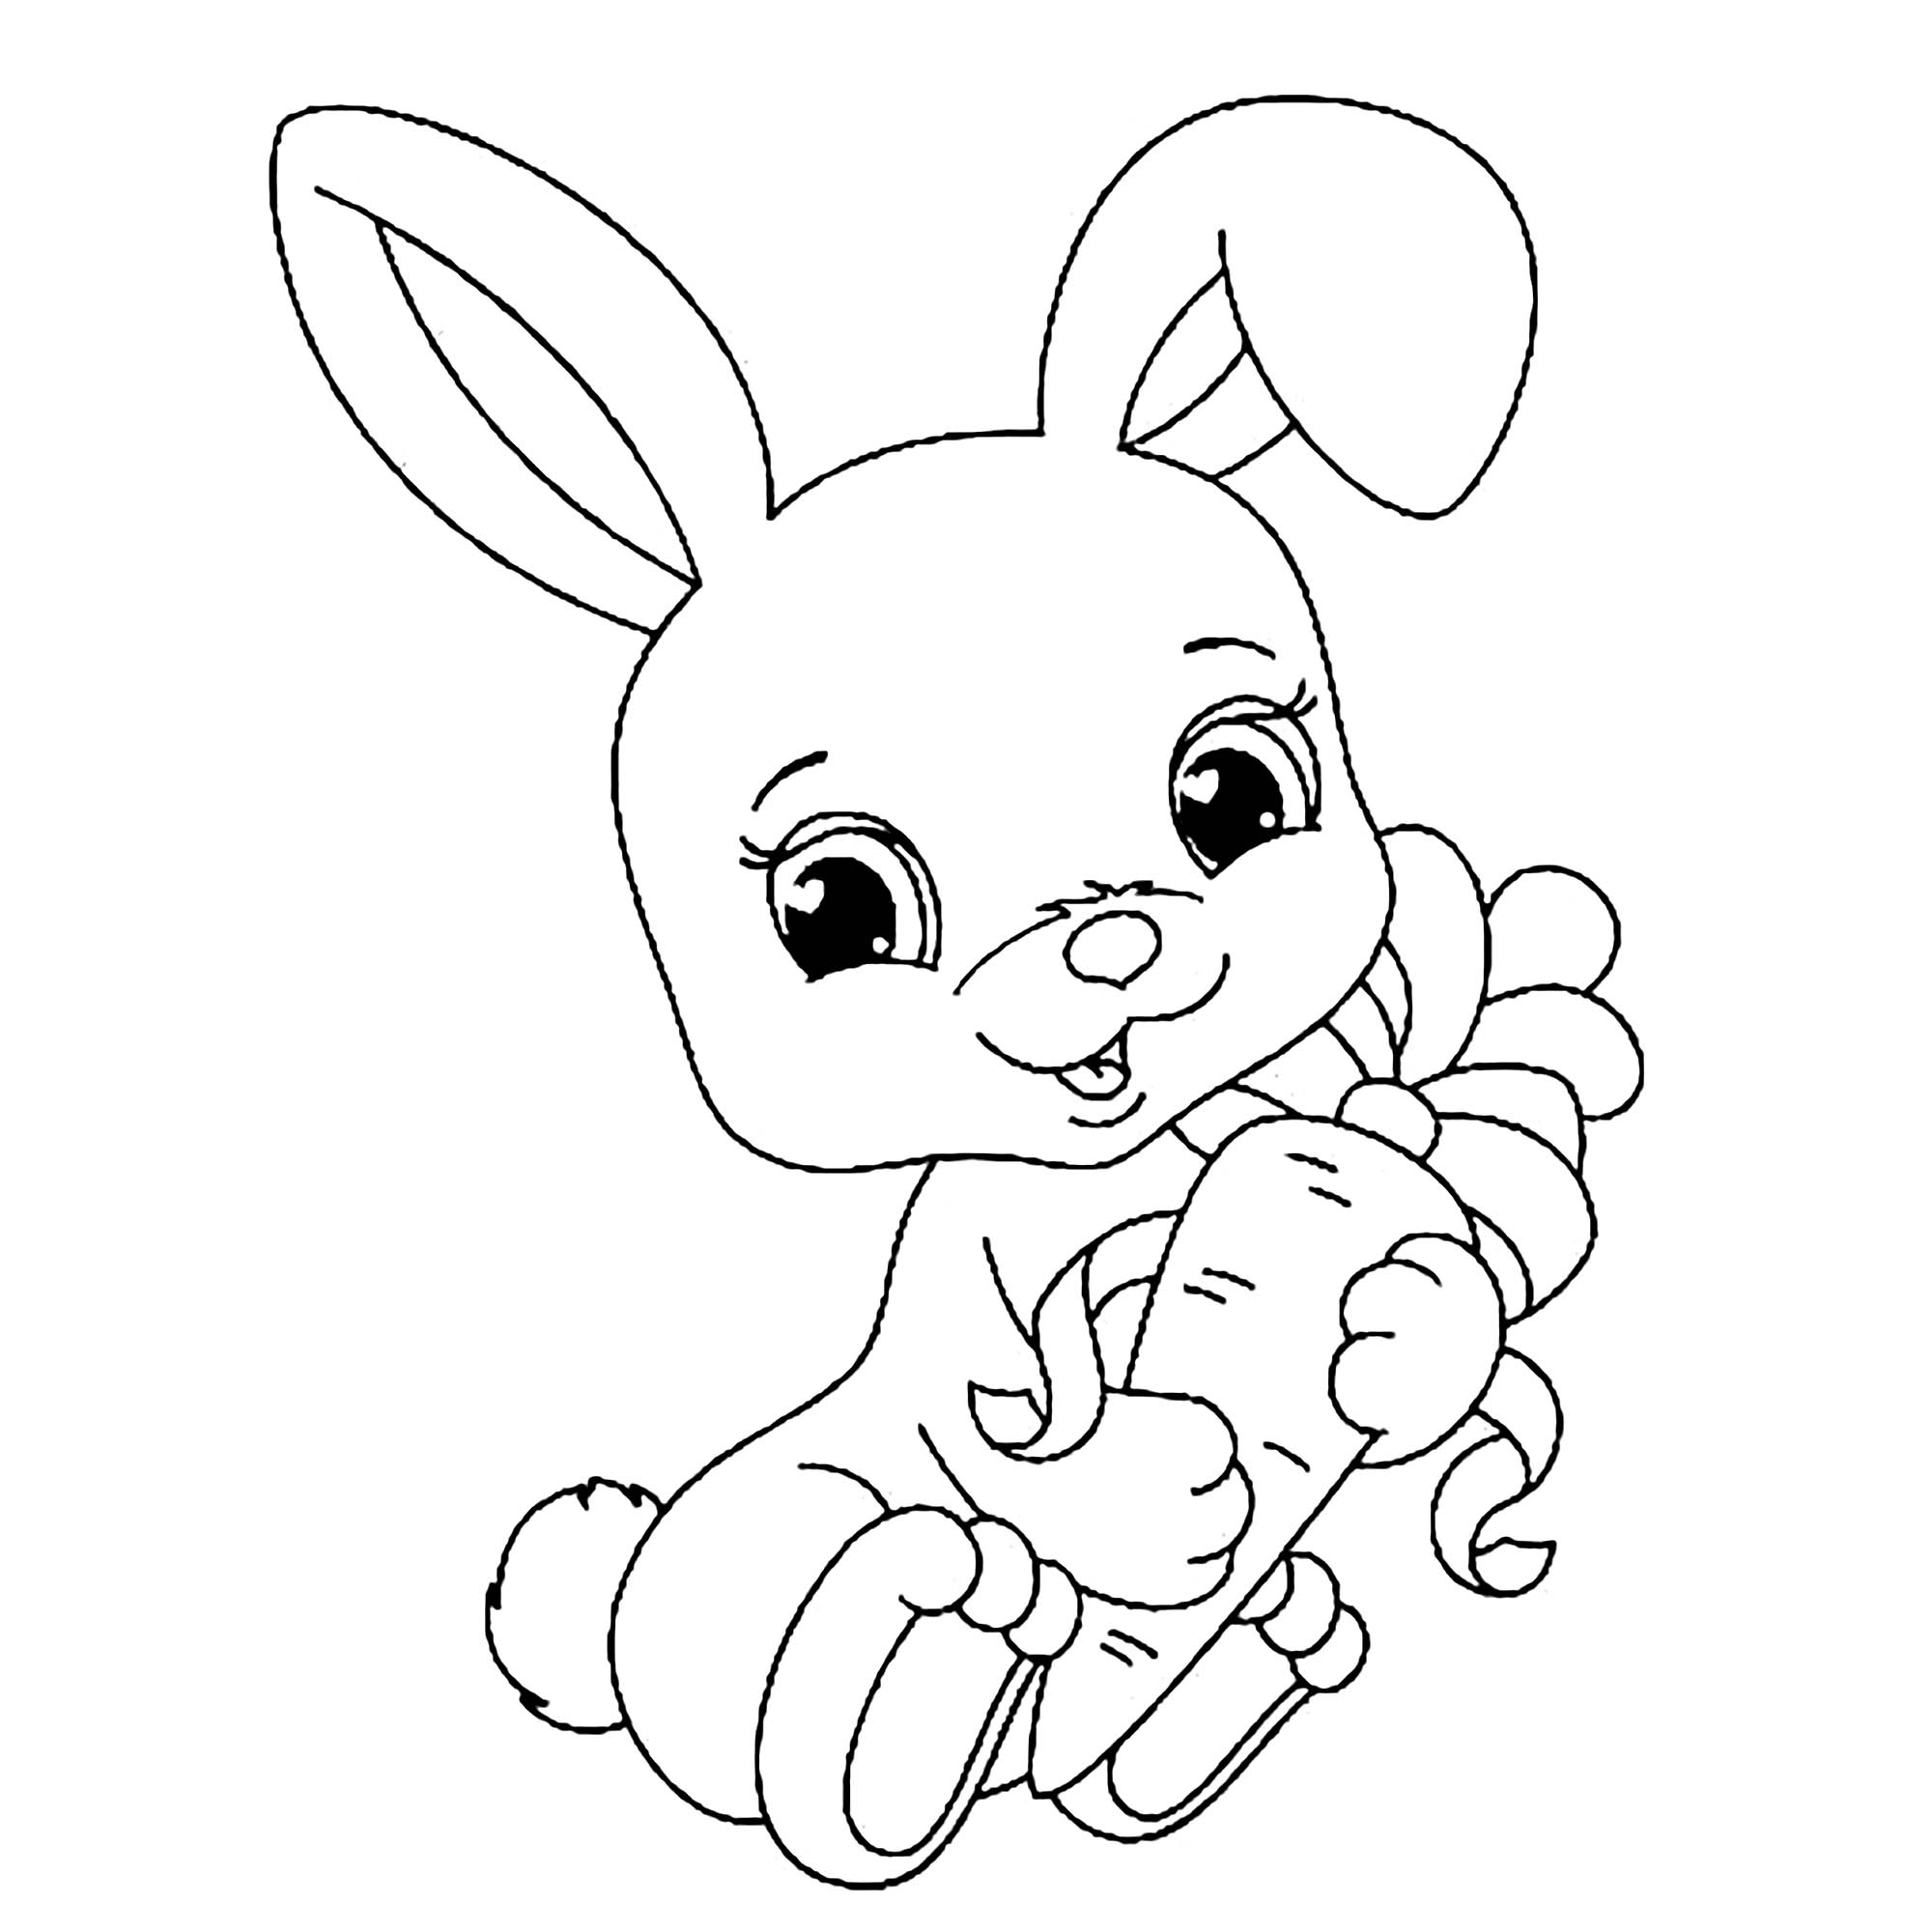 lapereau-rabbit-kids-coloring-pages